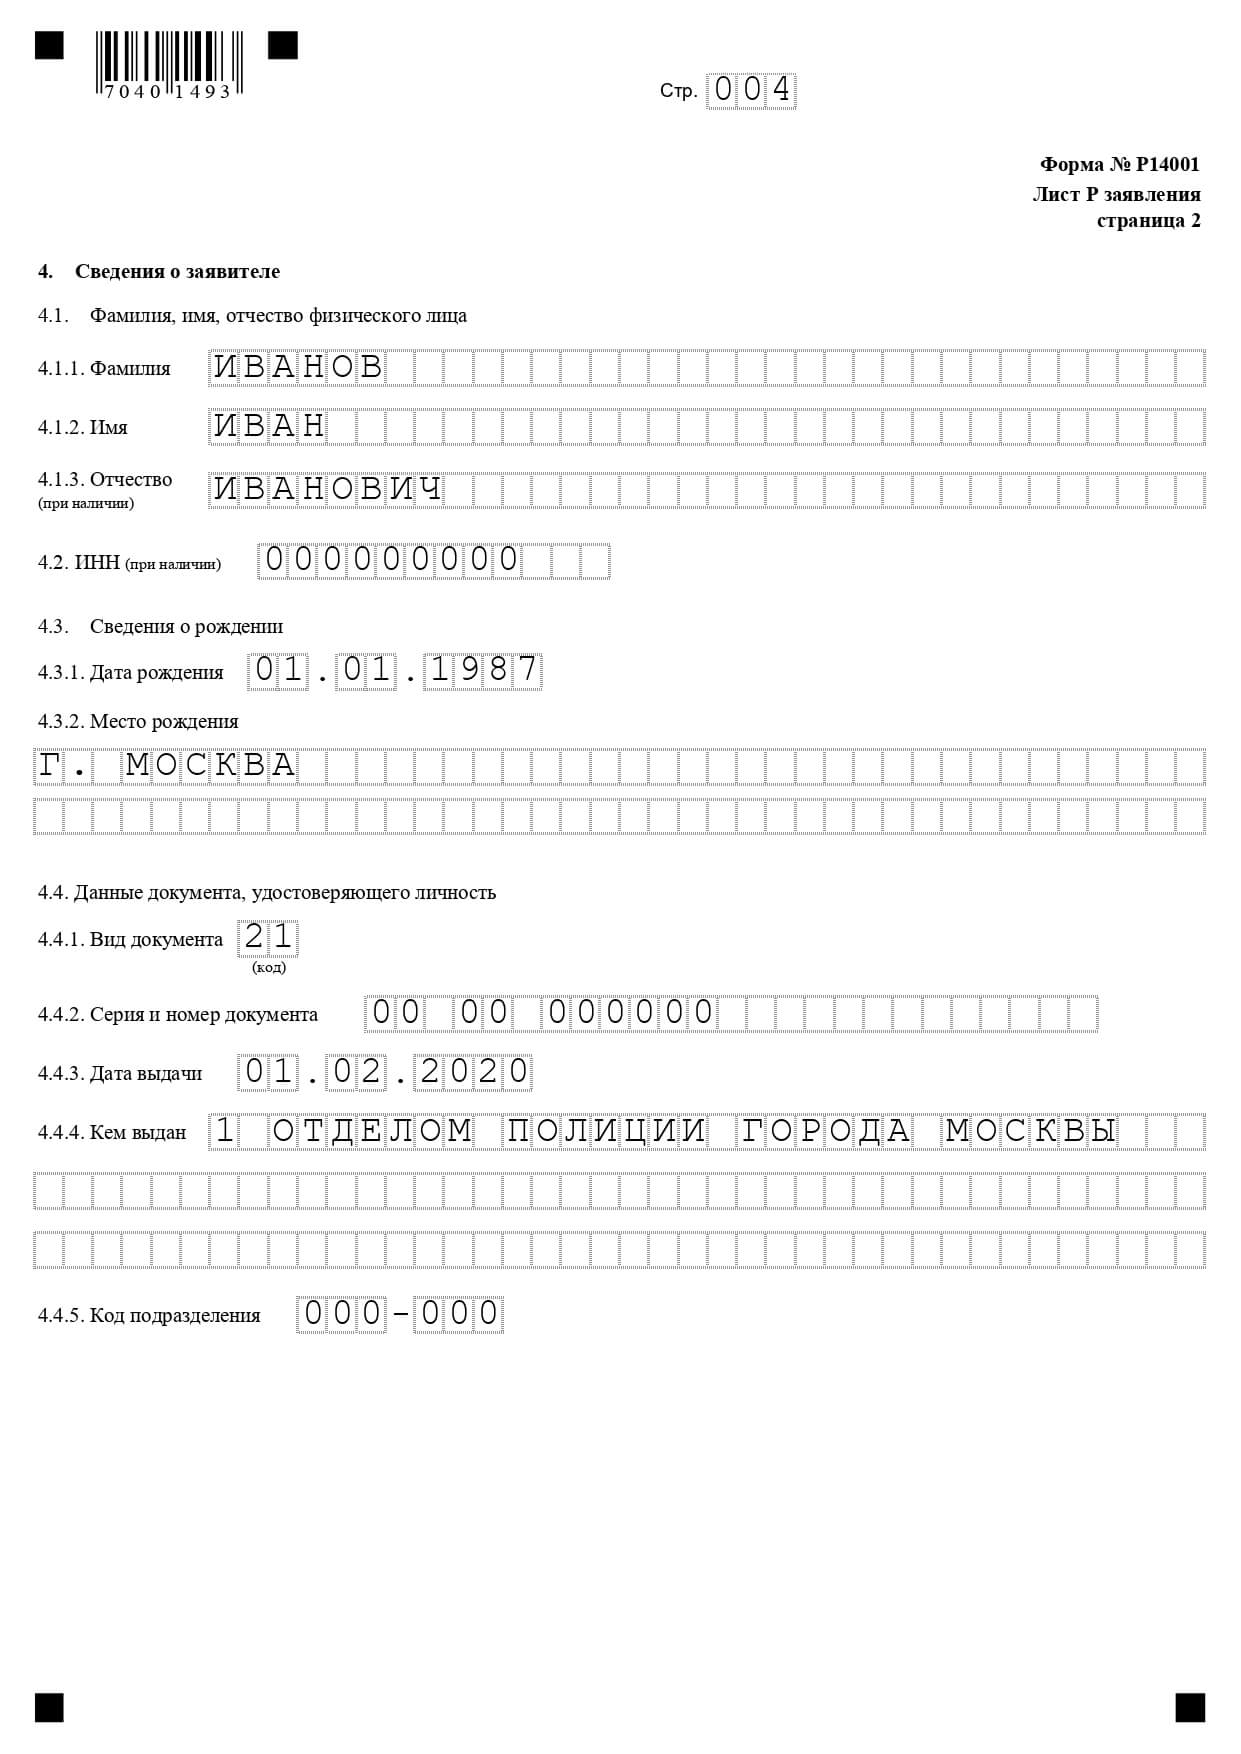 Смена адреса в москве образец гарантийное письмо о предоставлении юридического адреса